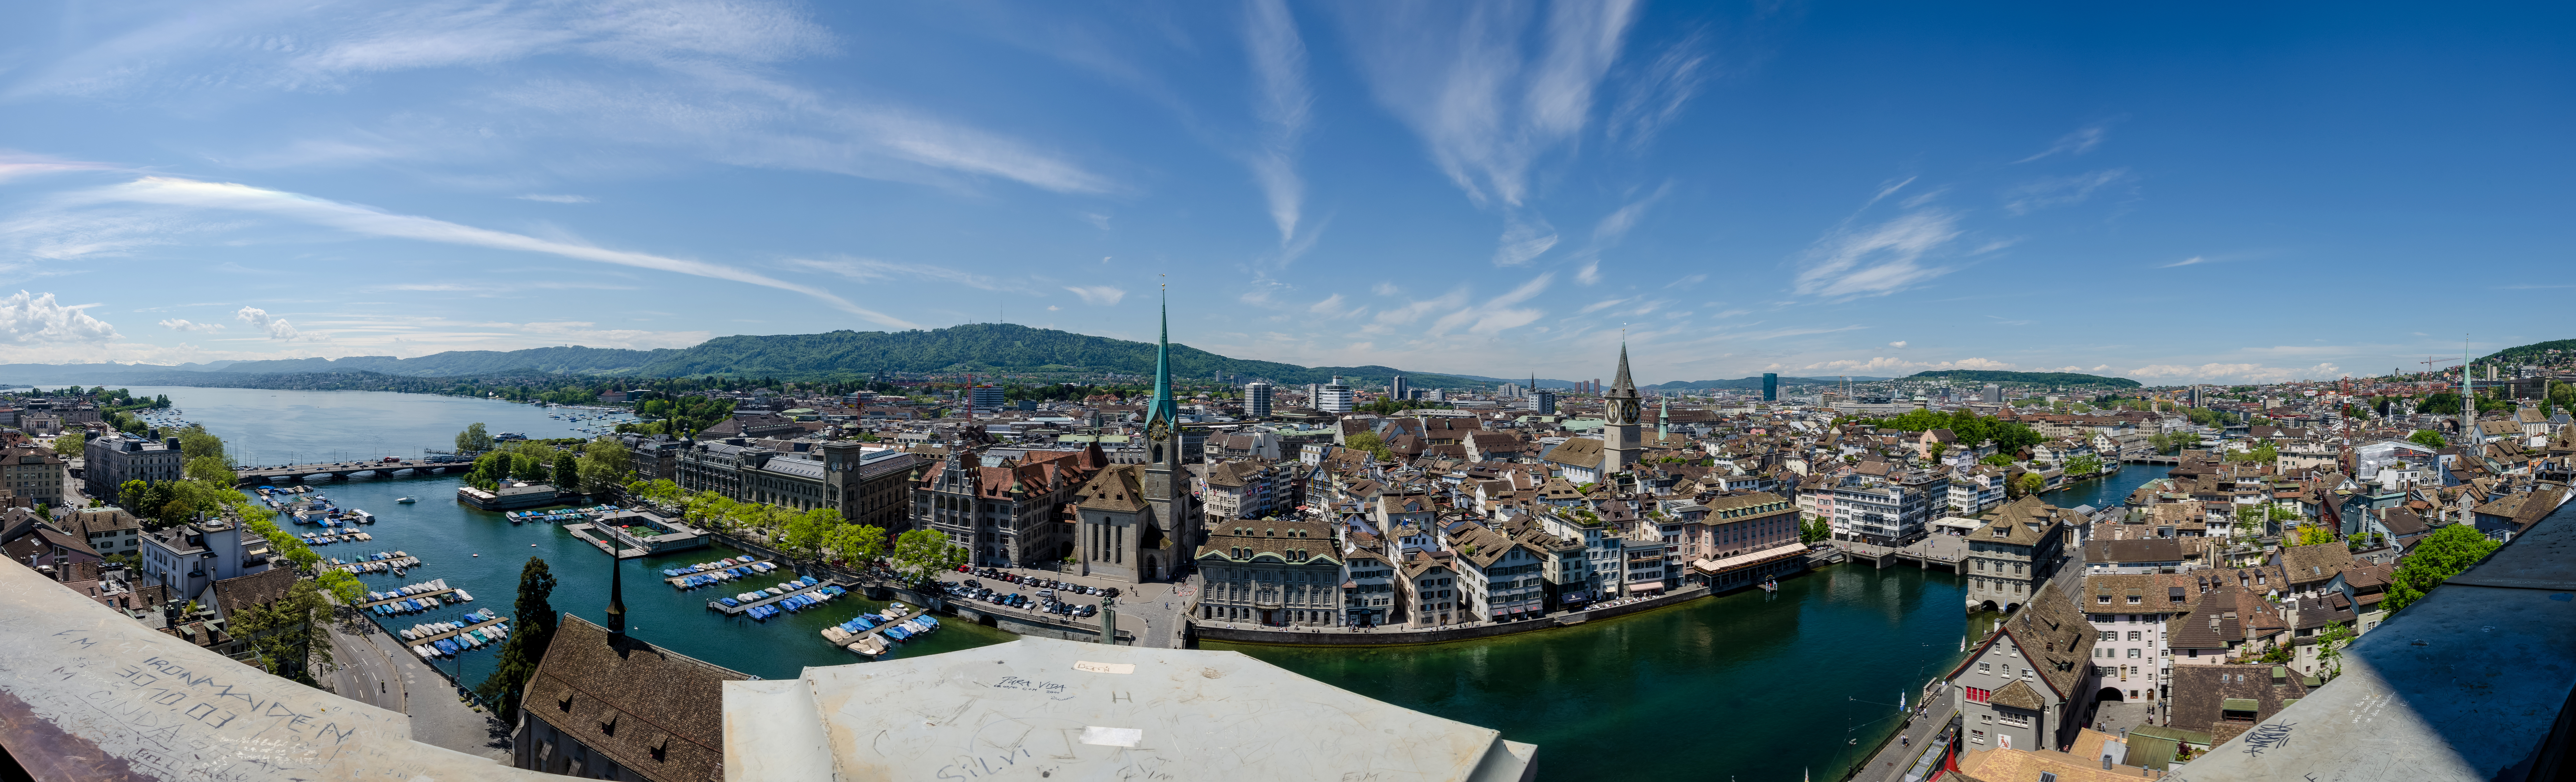 Zürich von seiner schönsten Seite